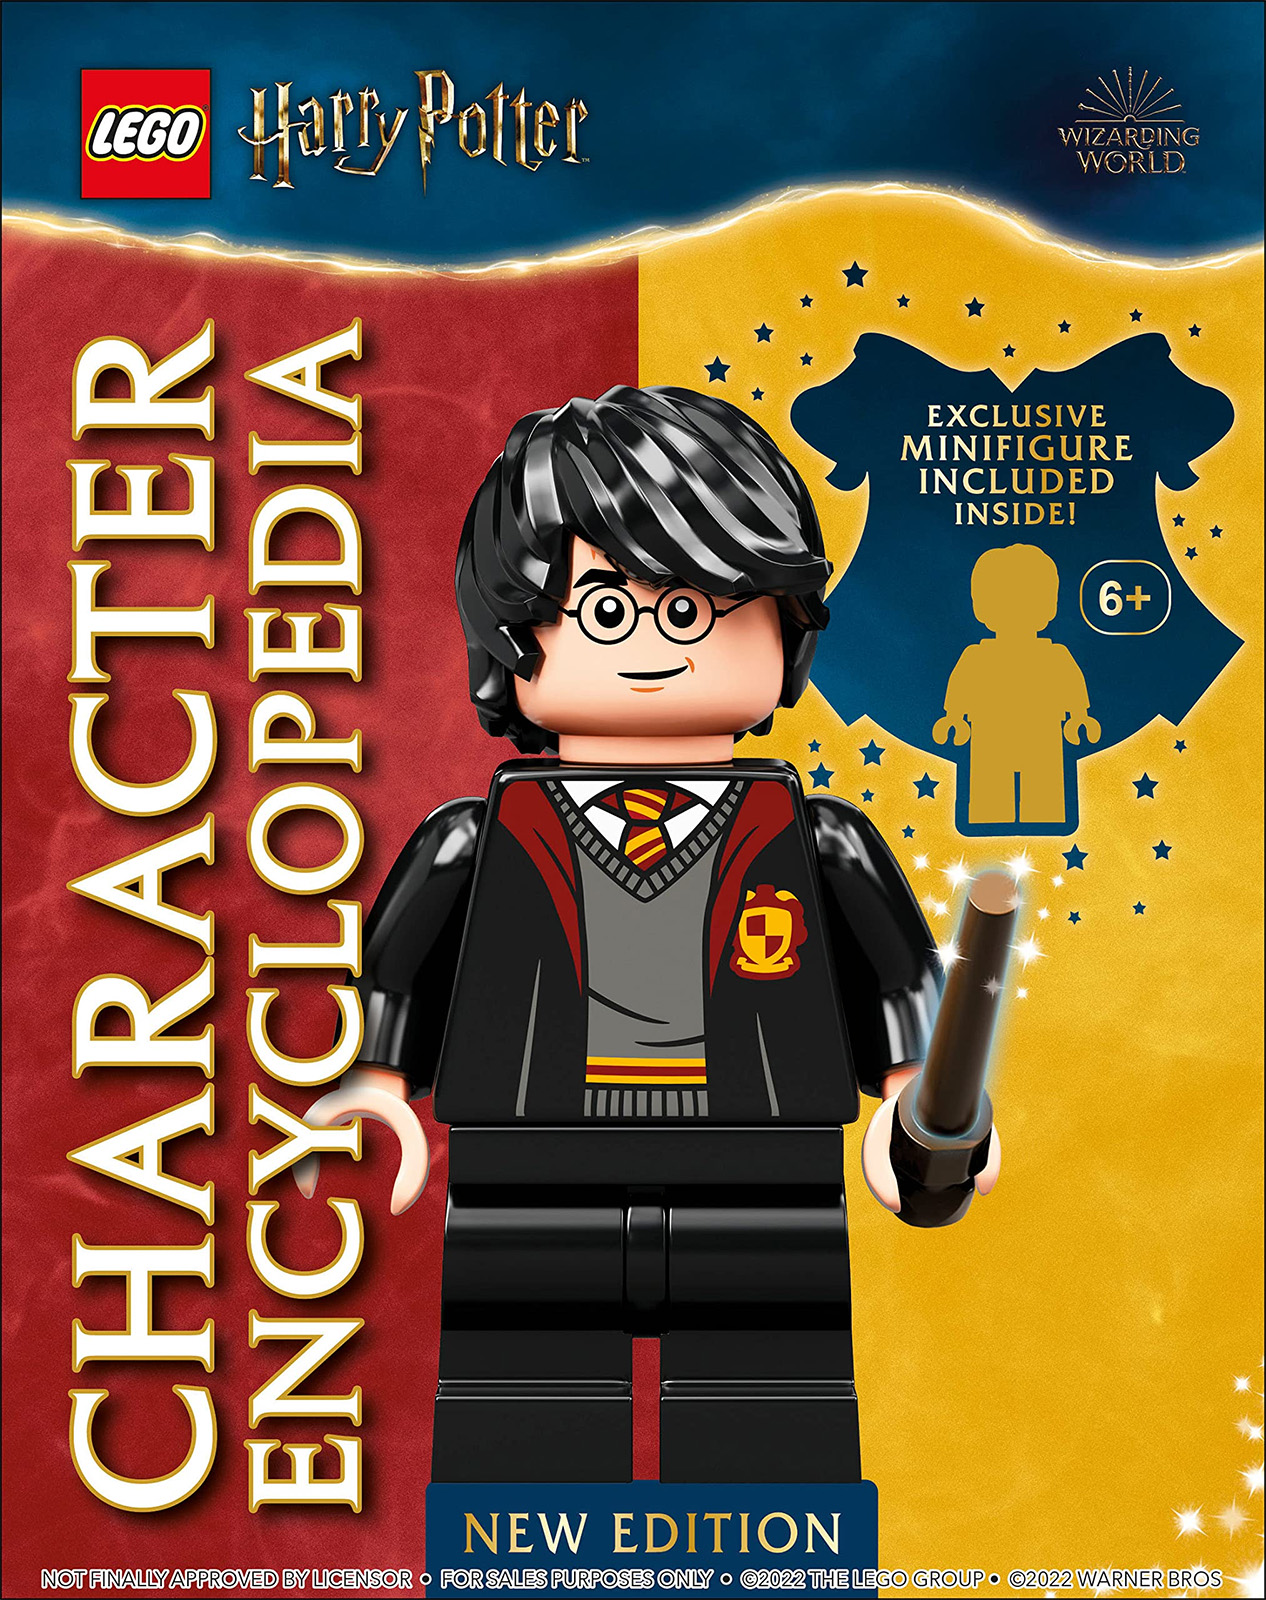 Առաջիկա 2023 թվականի հուլիս. LEGO Harry Potter Character Encyclopedia նոր հրատարակություն